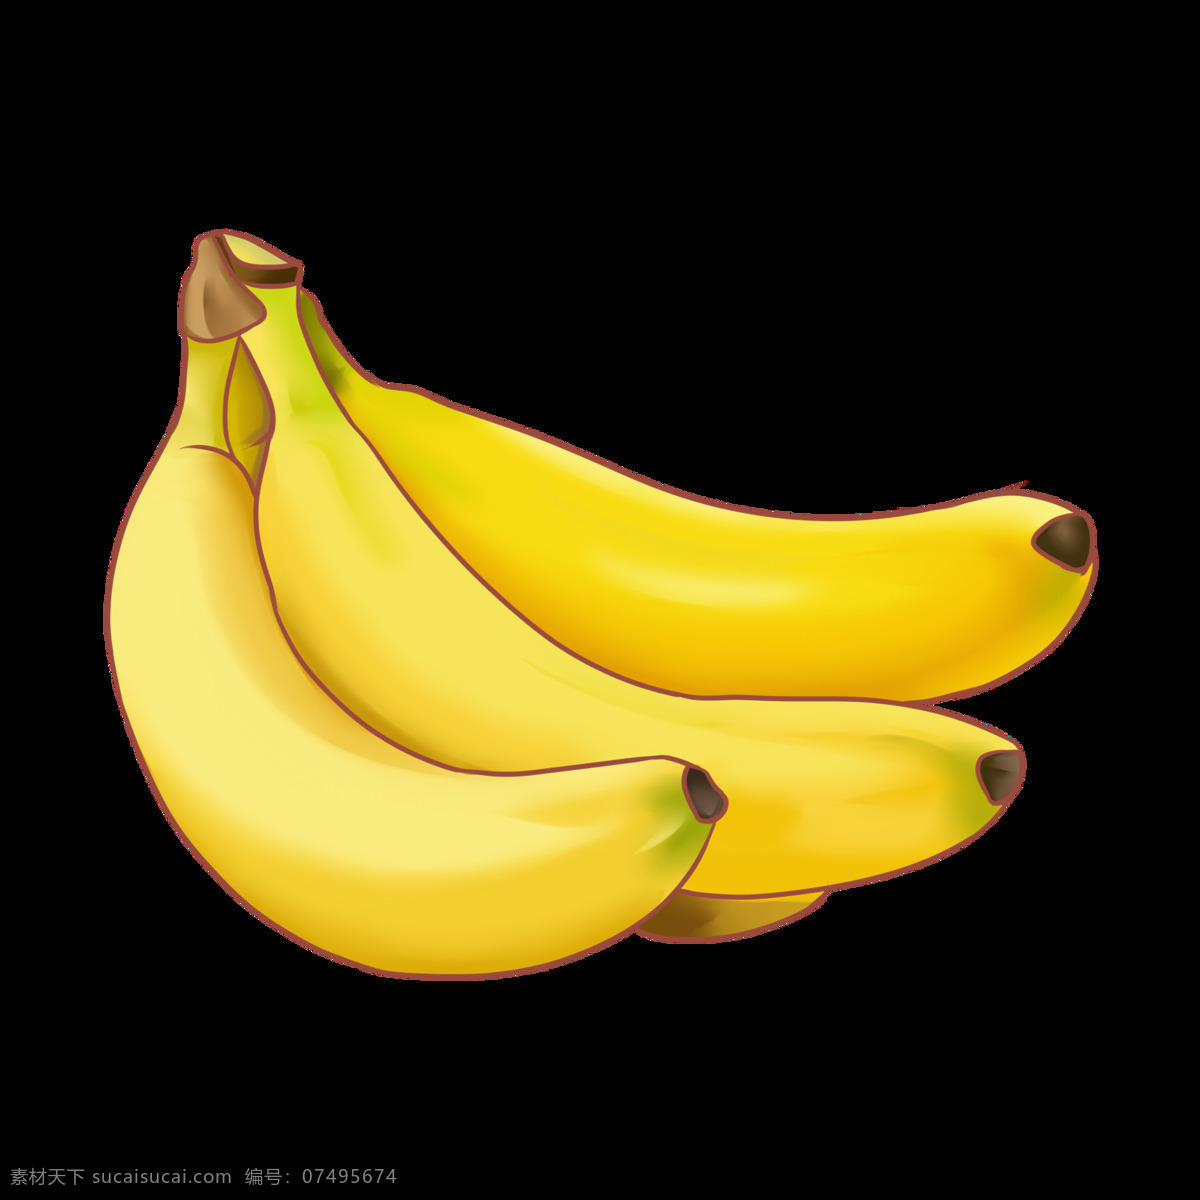 香蕉 水果 免抠图 西瓜 抠图